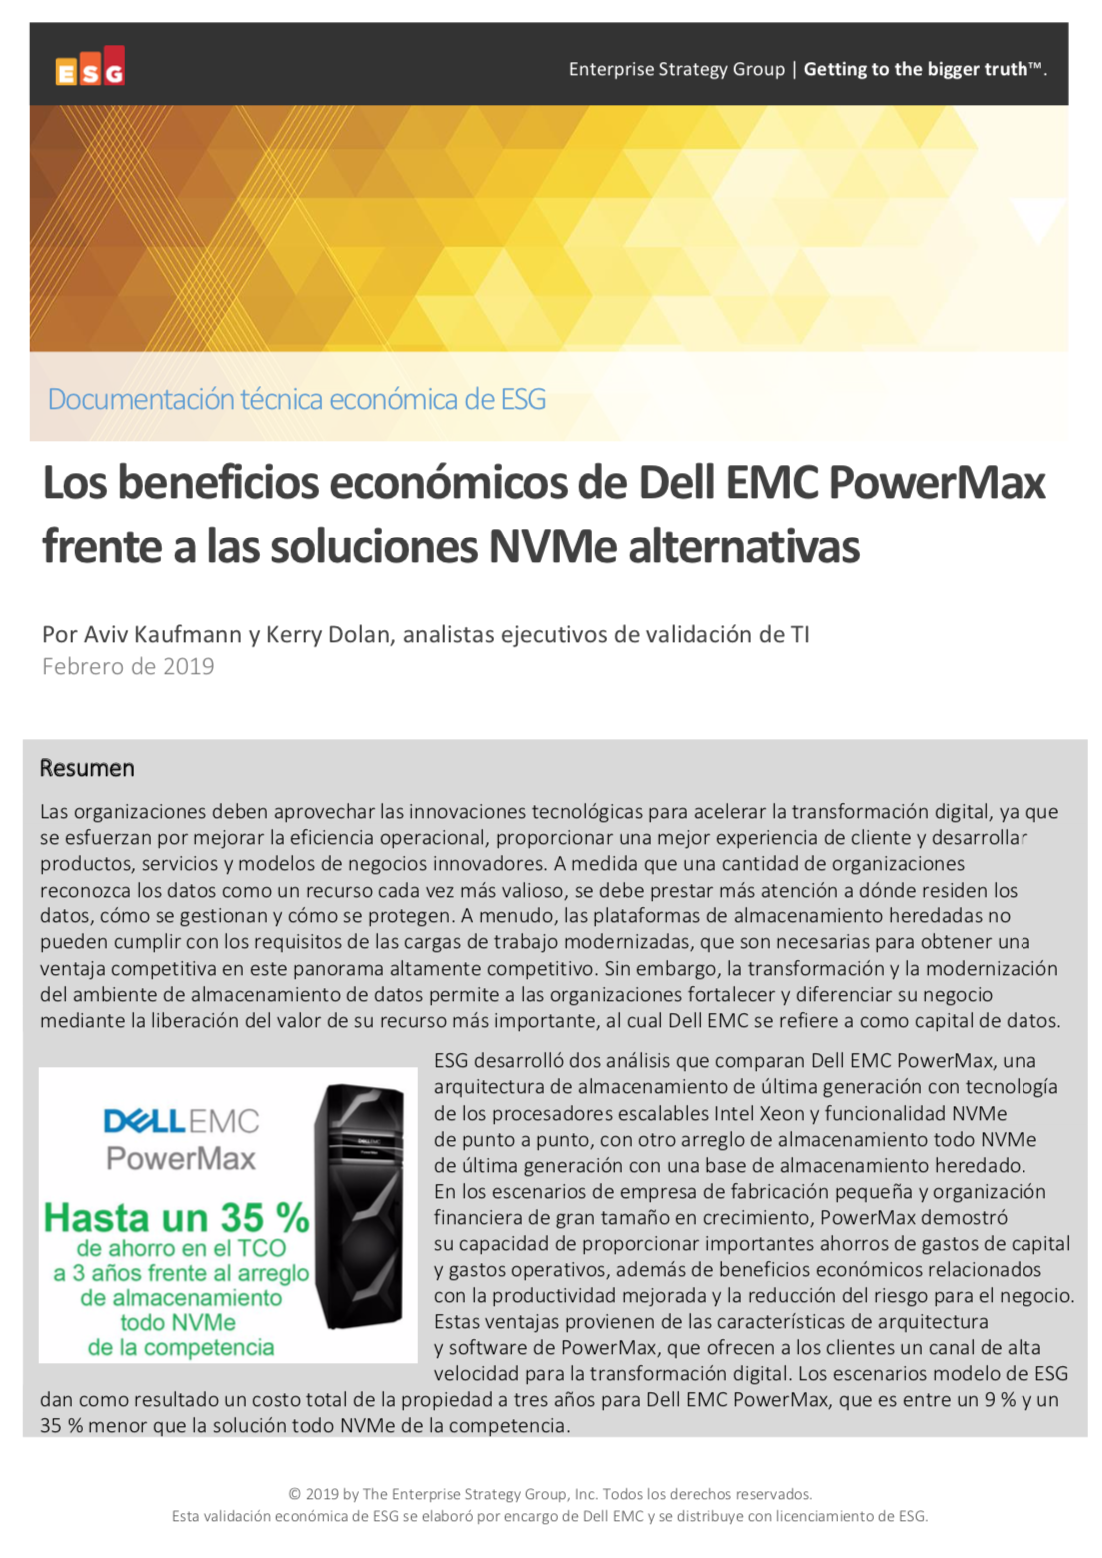 Los beneficios económicos de Dell EMC PowerMax frente a las soluciones NVMe alternativas